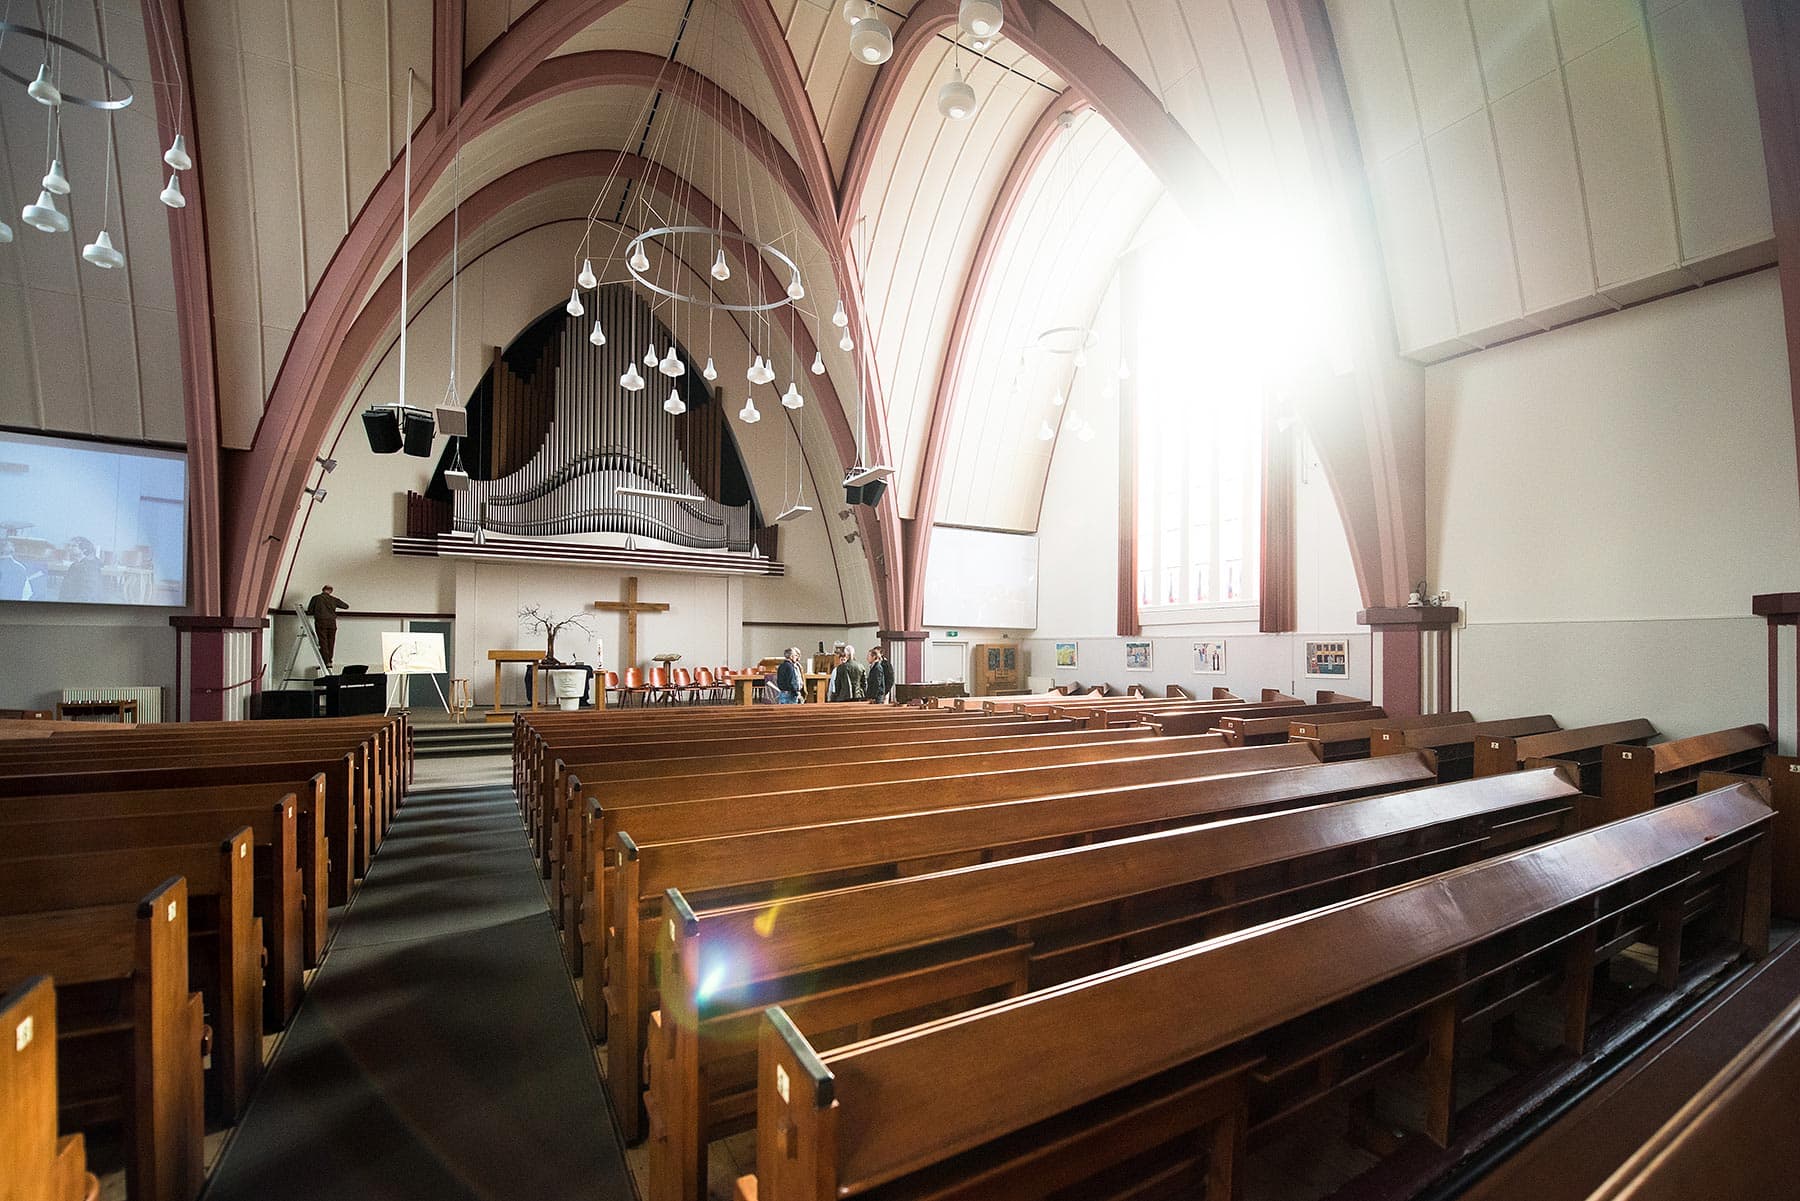 Kerk voorzien van infrarood warmtestralers - Harderwijk